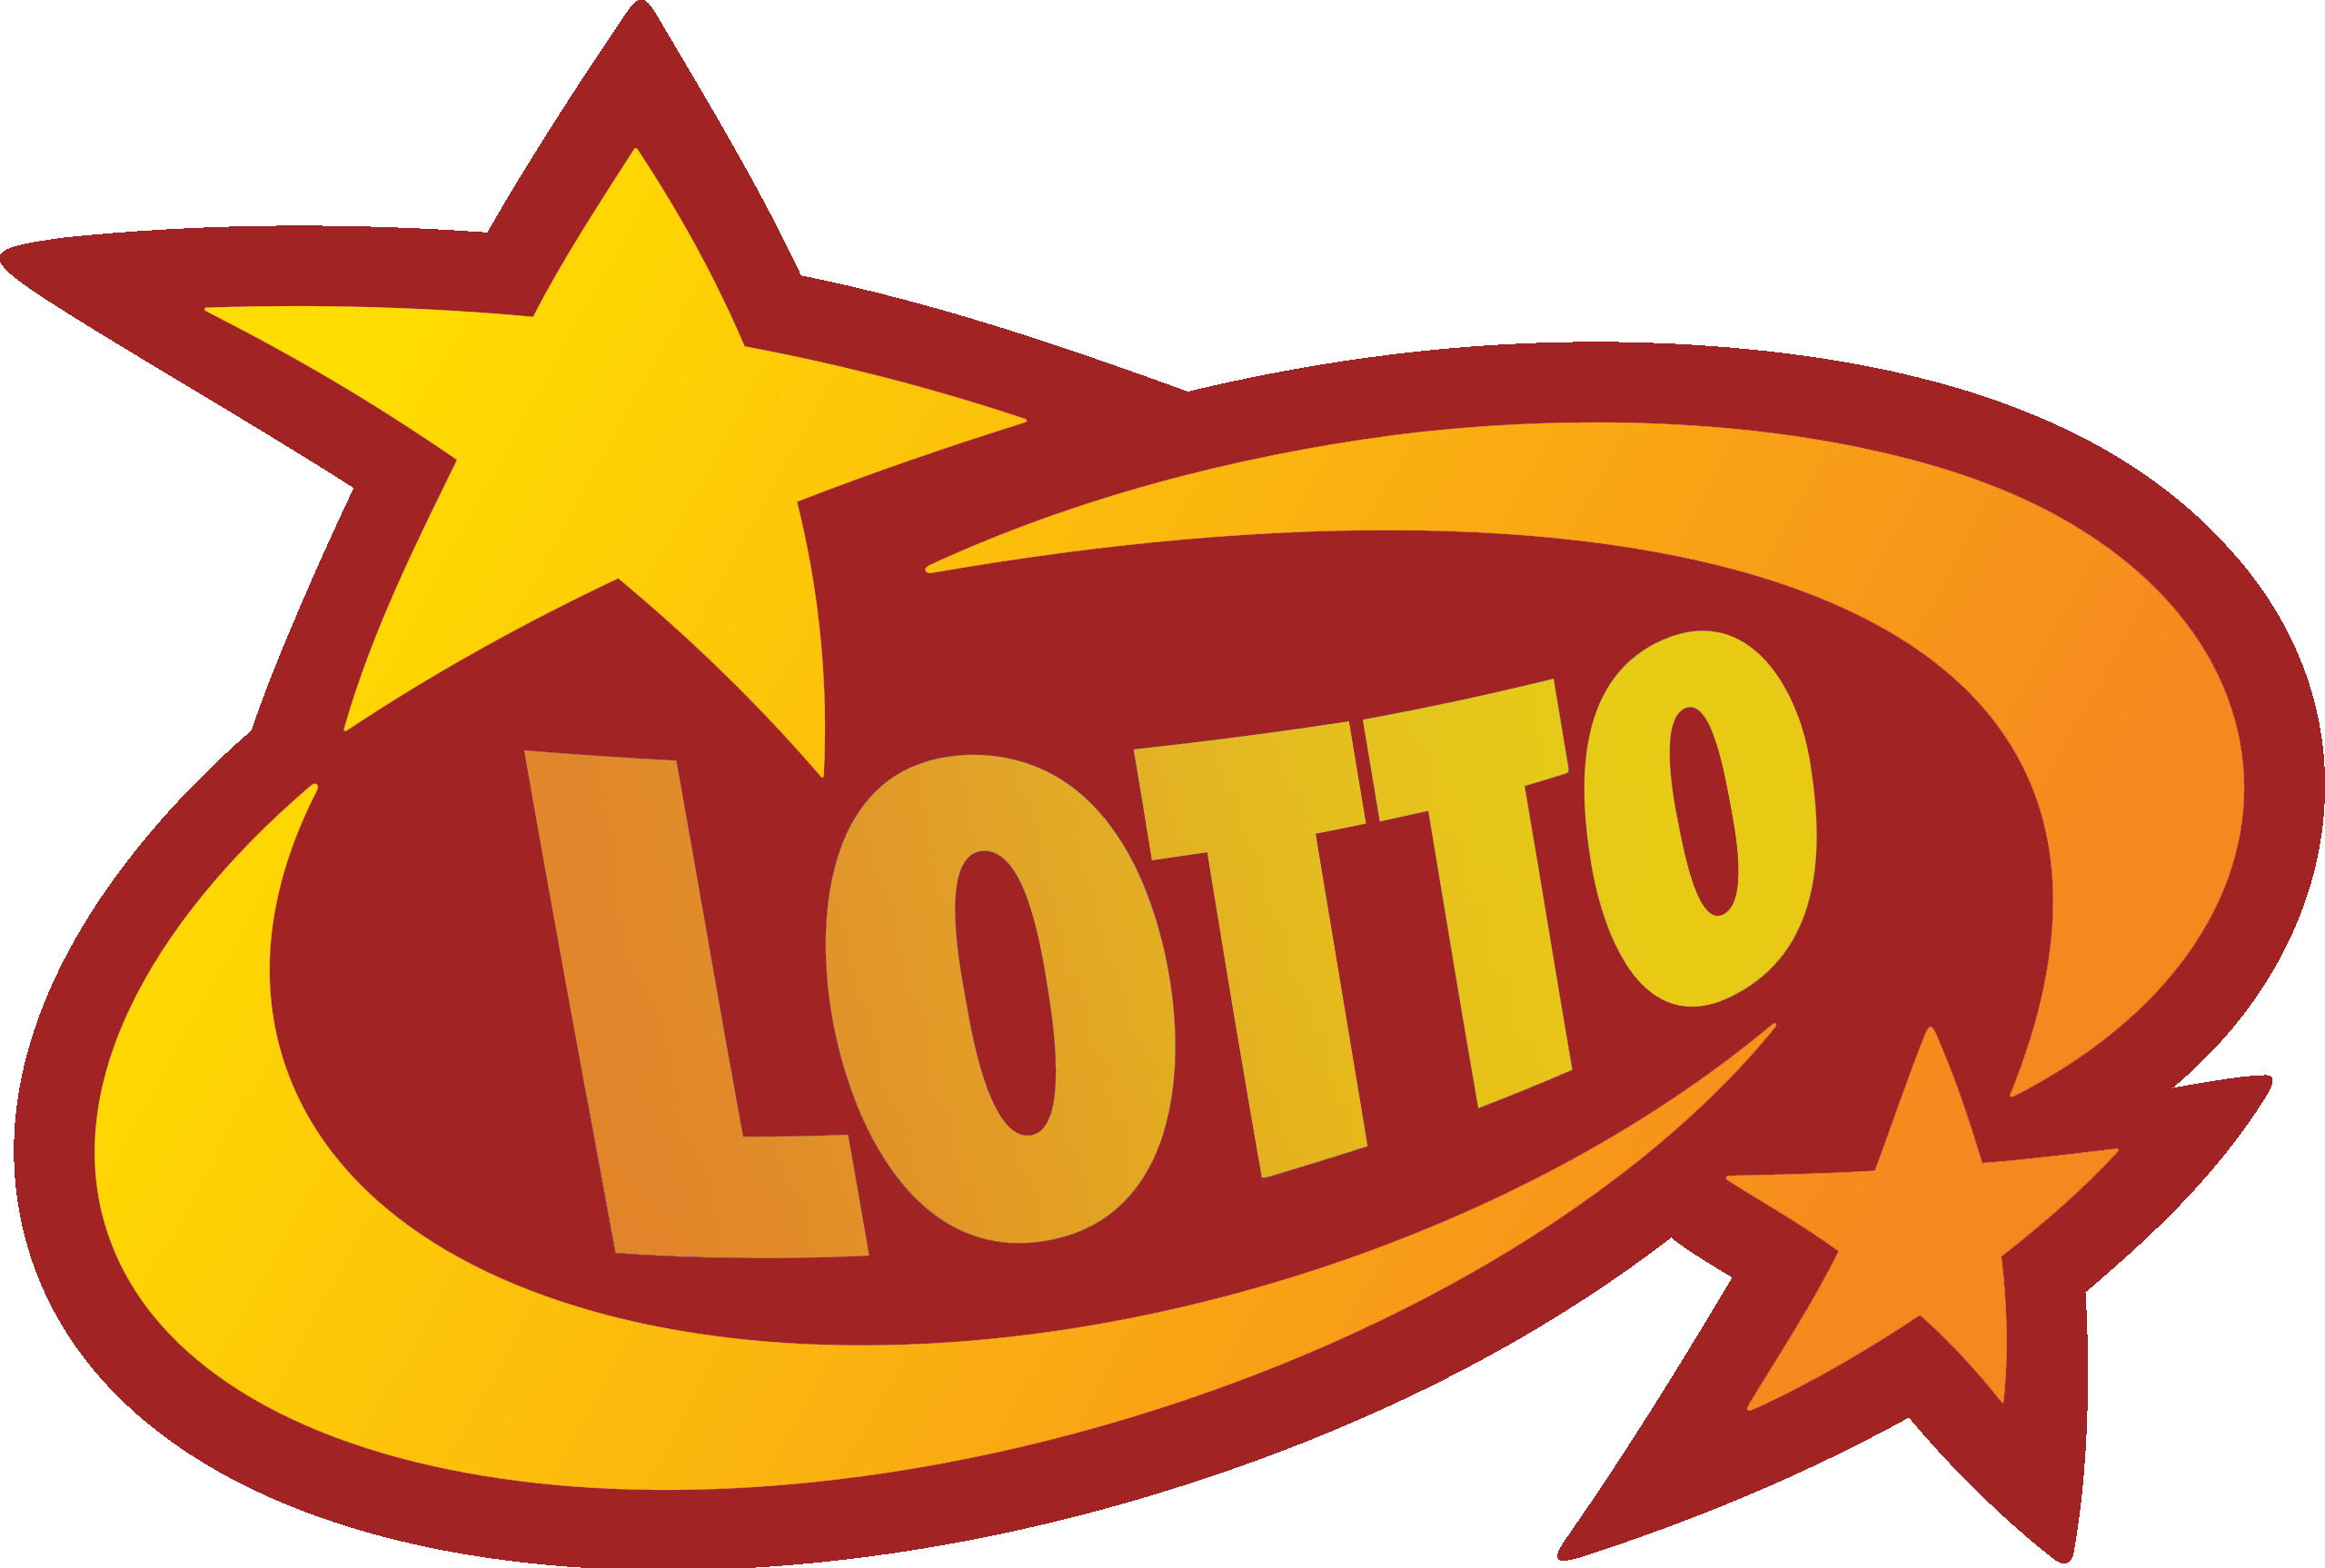 LottozAll